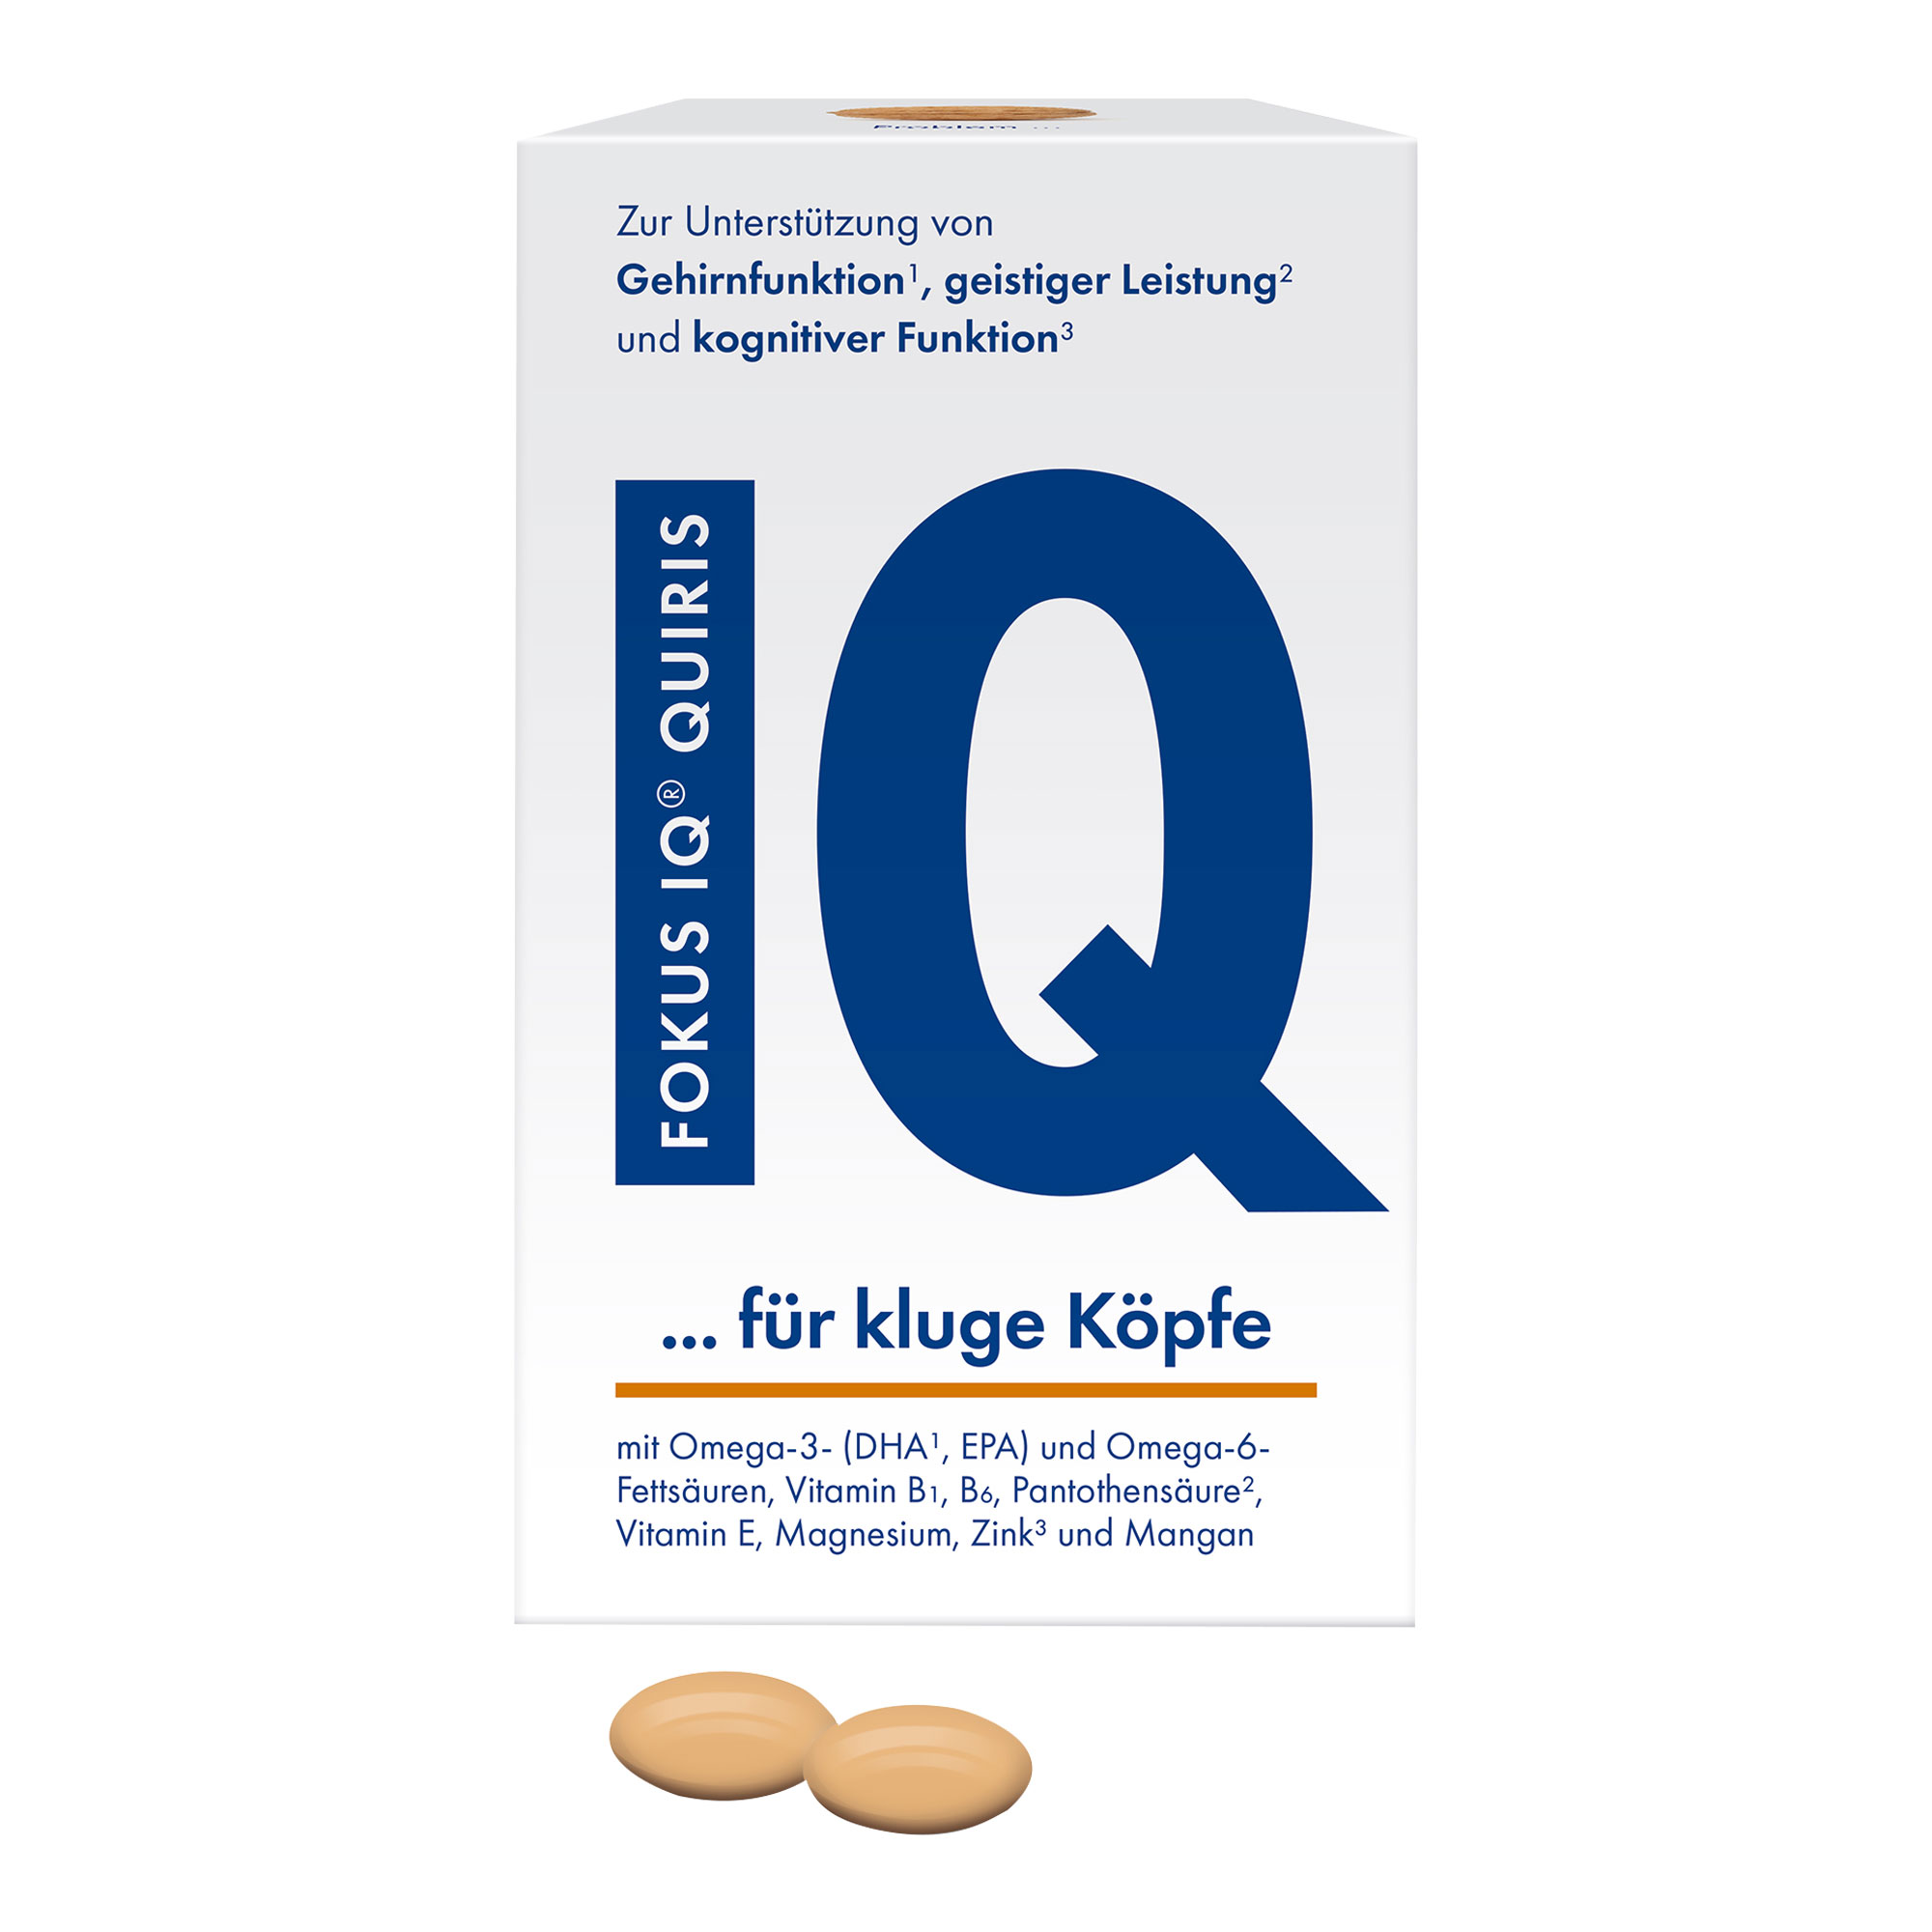 Nährstoffkombination mit Omega-3- und Omega-6-Fettsäuren, Vitaminen und Mineralstoffen.